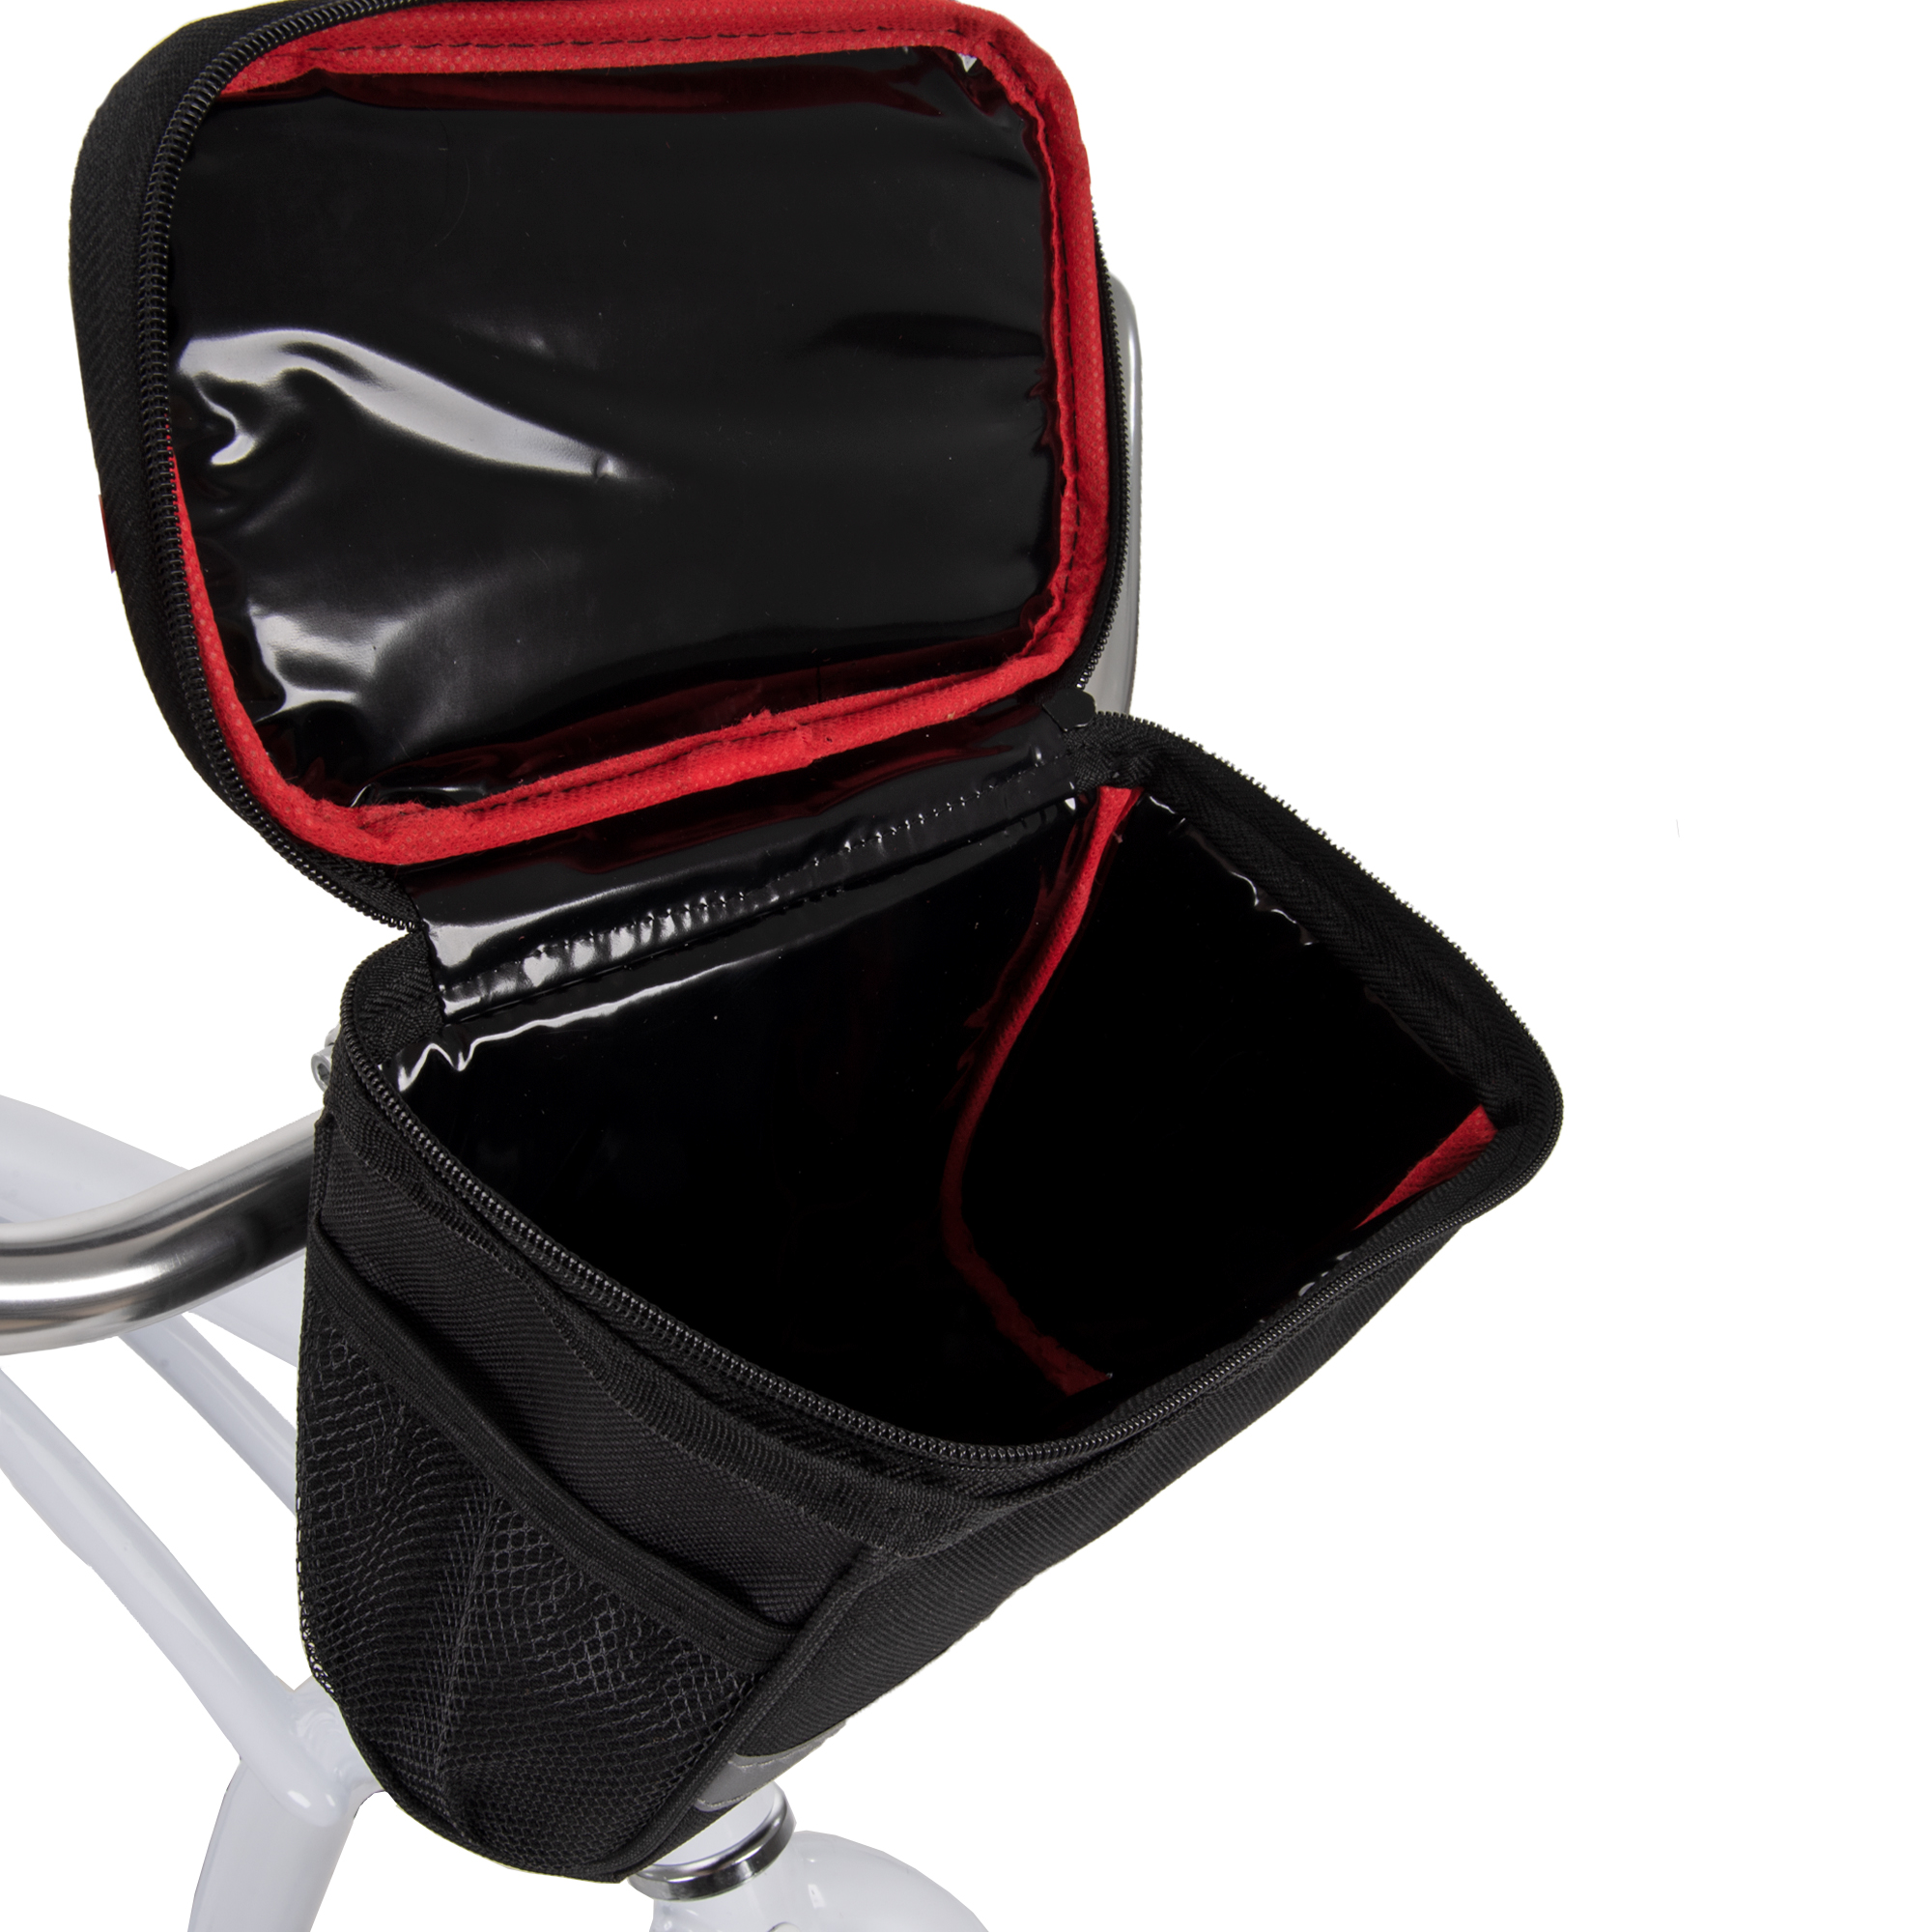 Huffy Handlebar Cooler Bag with Smartphone Pocket, Black - image 3 of 5